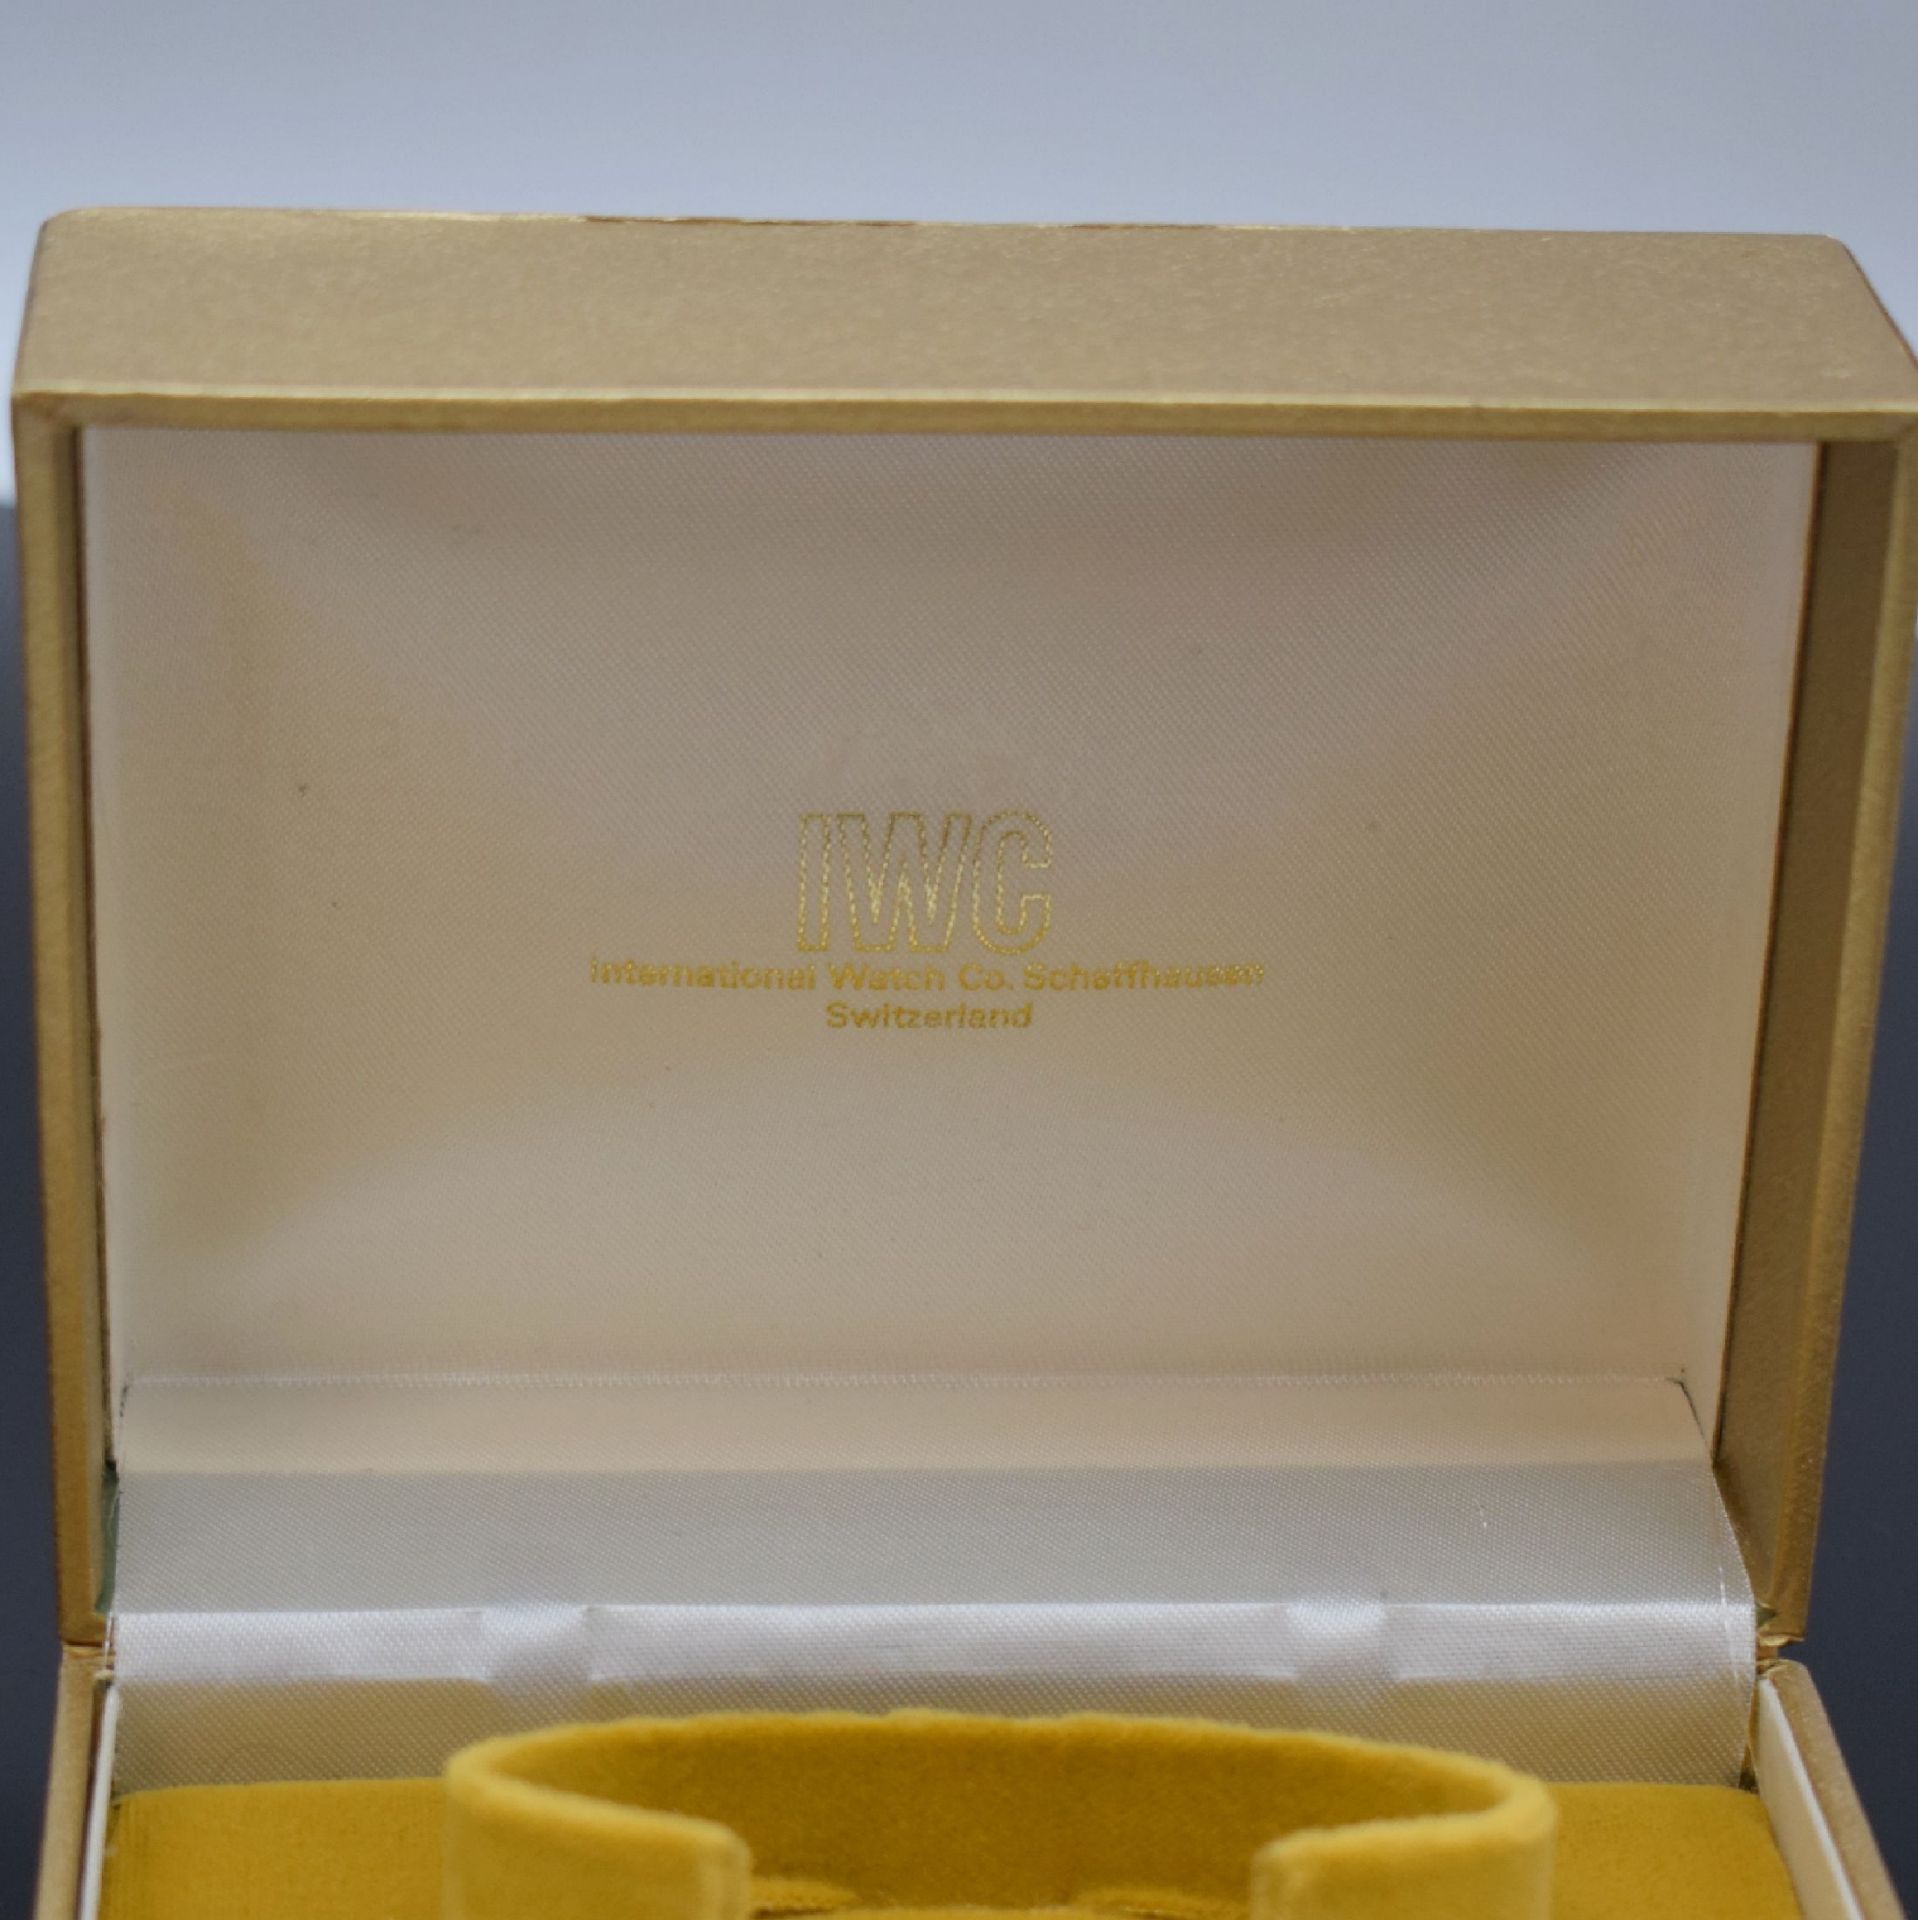 IWC seltene goldene Box für Armbanduhr, Schweiz um 1965, - Image 2 of 6